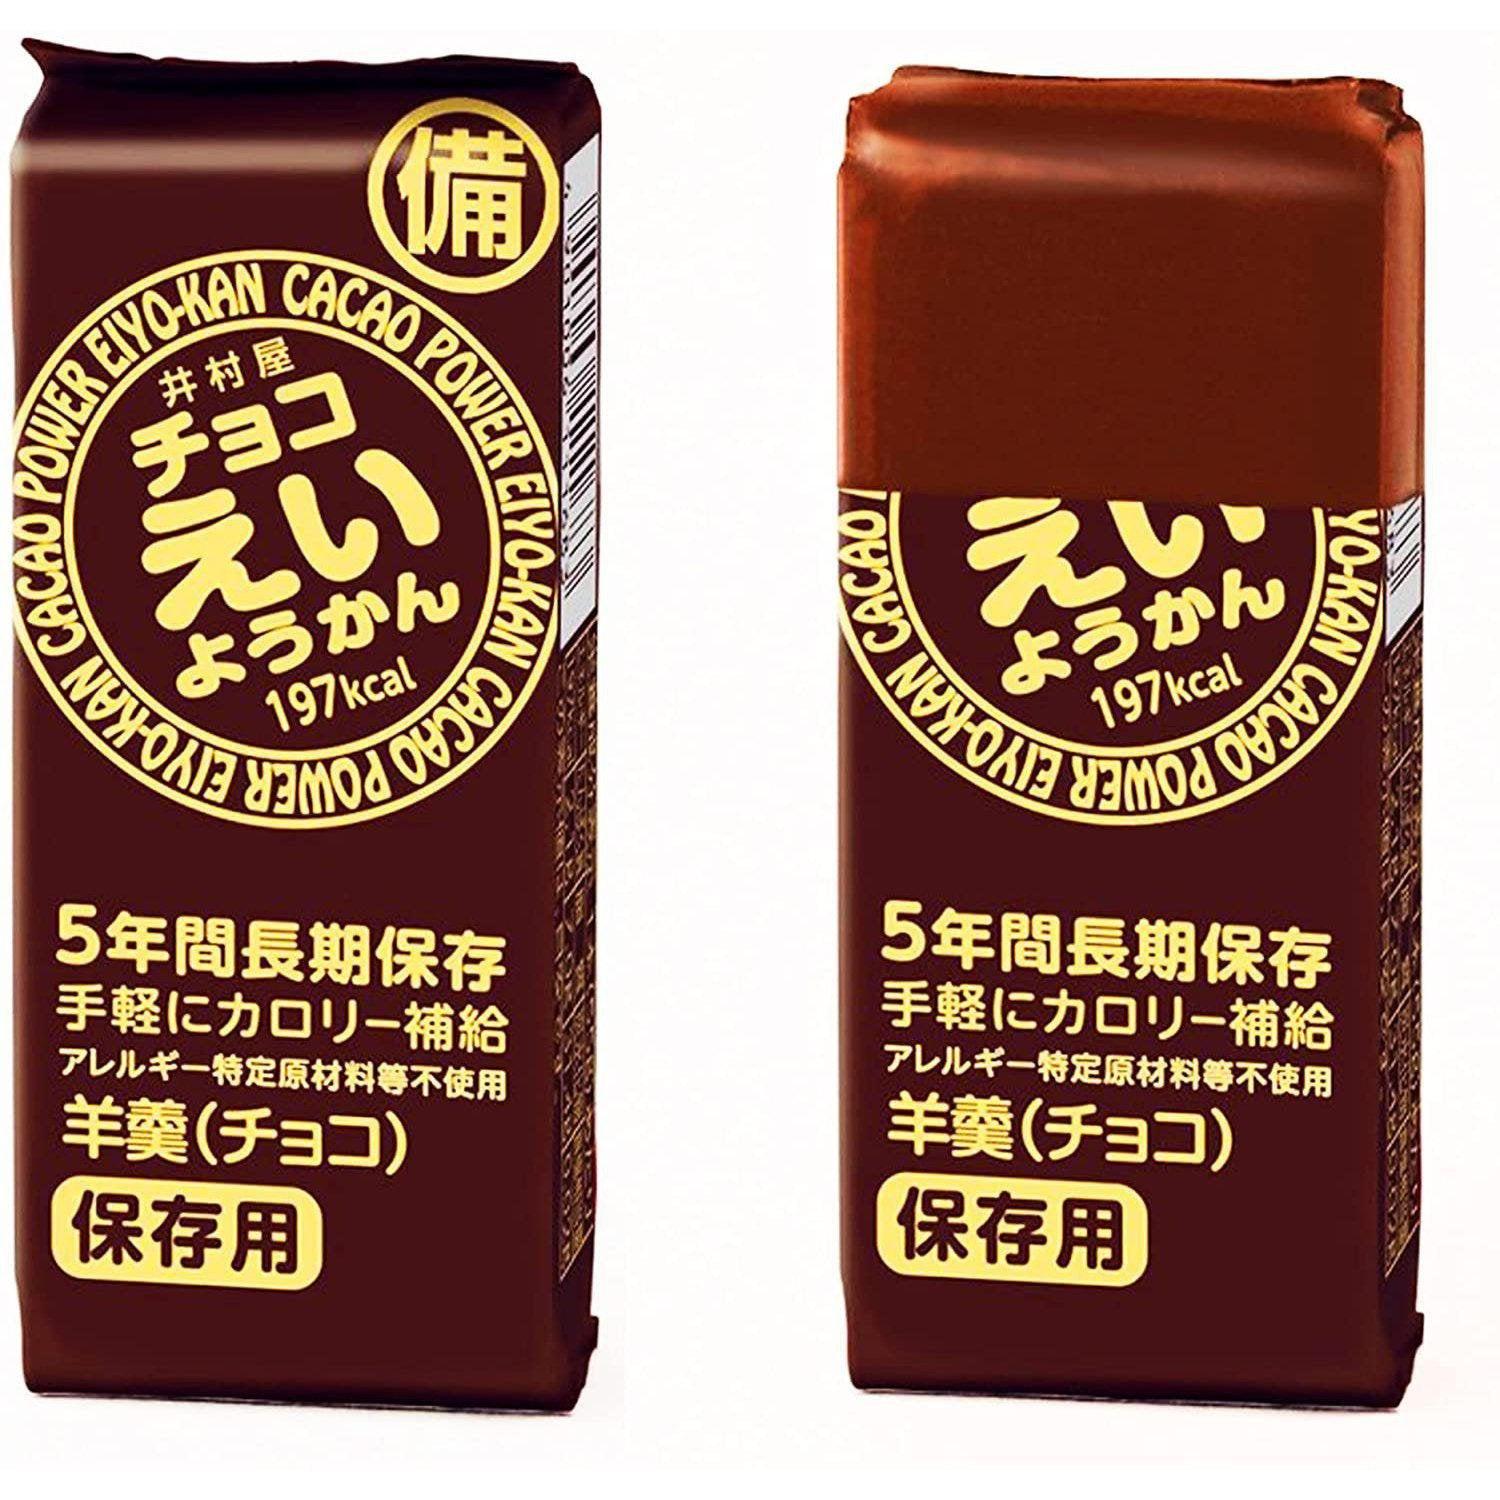 Imuraya Chocolate Eiyokan Jellied Azuki Red Bean Paste Blocks 5 Bars